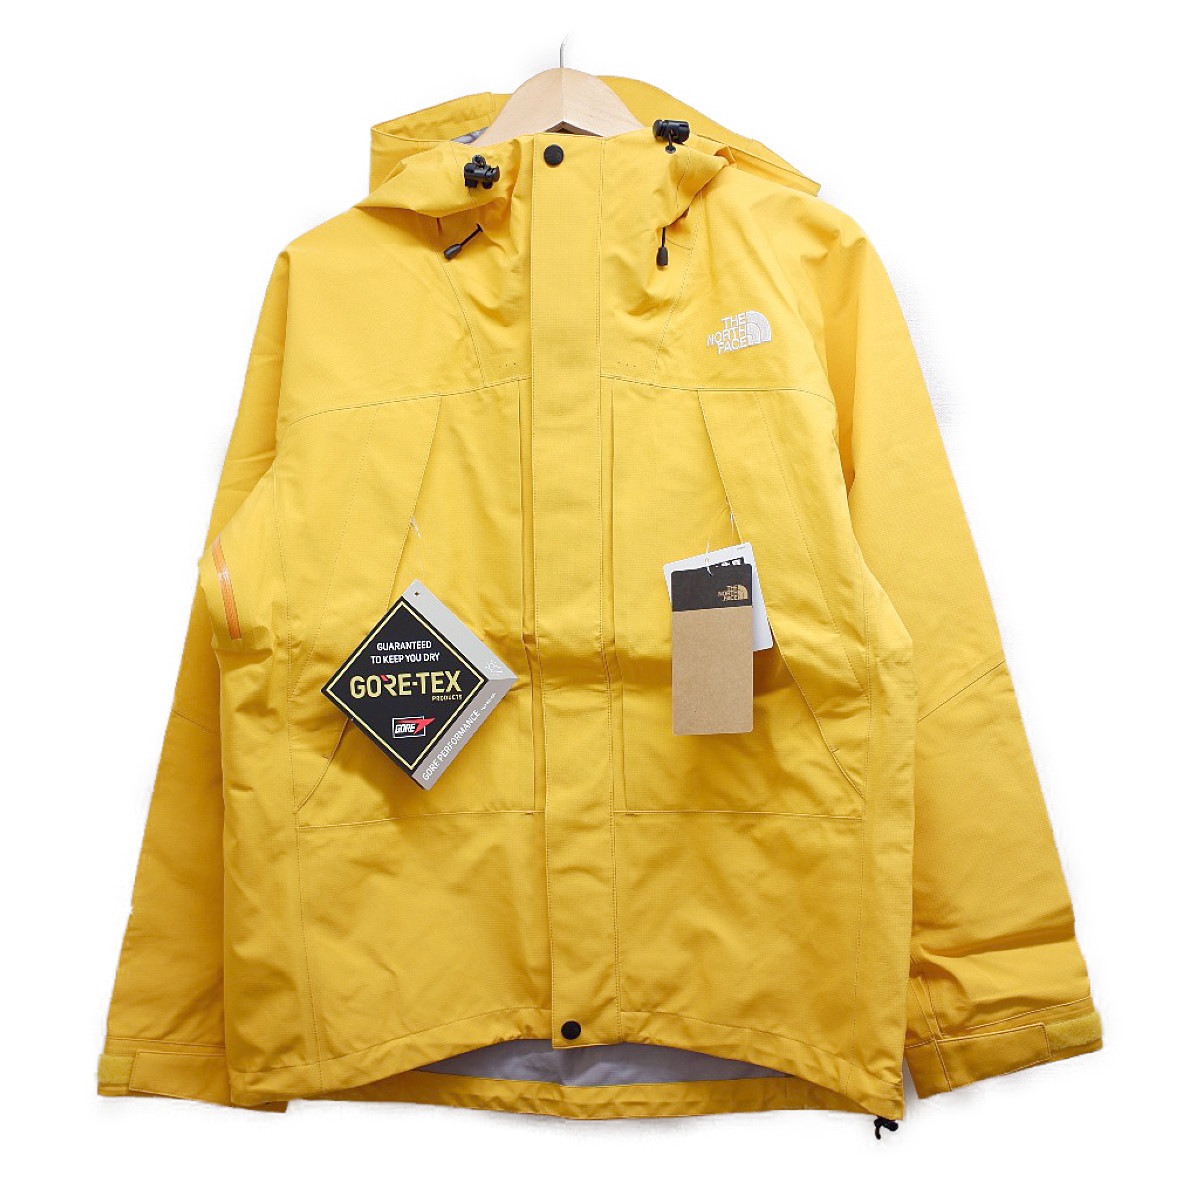 ノースフェイスのNP61910 All Mountain Jacket GORE-TEXゴアテックス オールマウンテンジャケットの買取実績です。